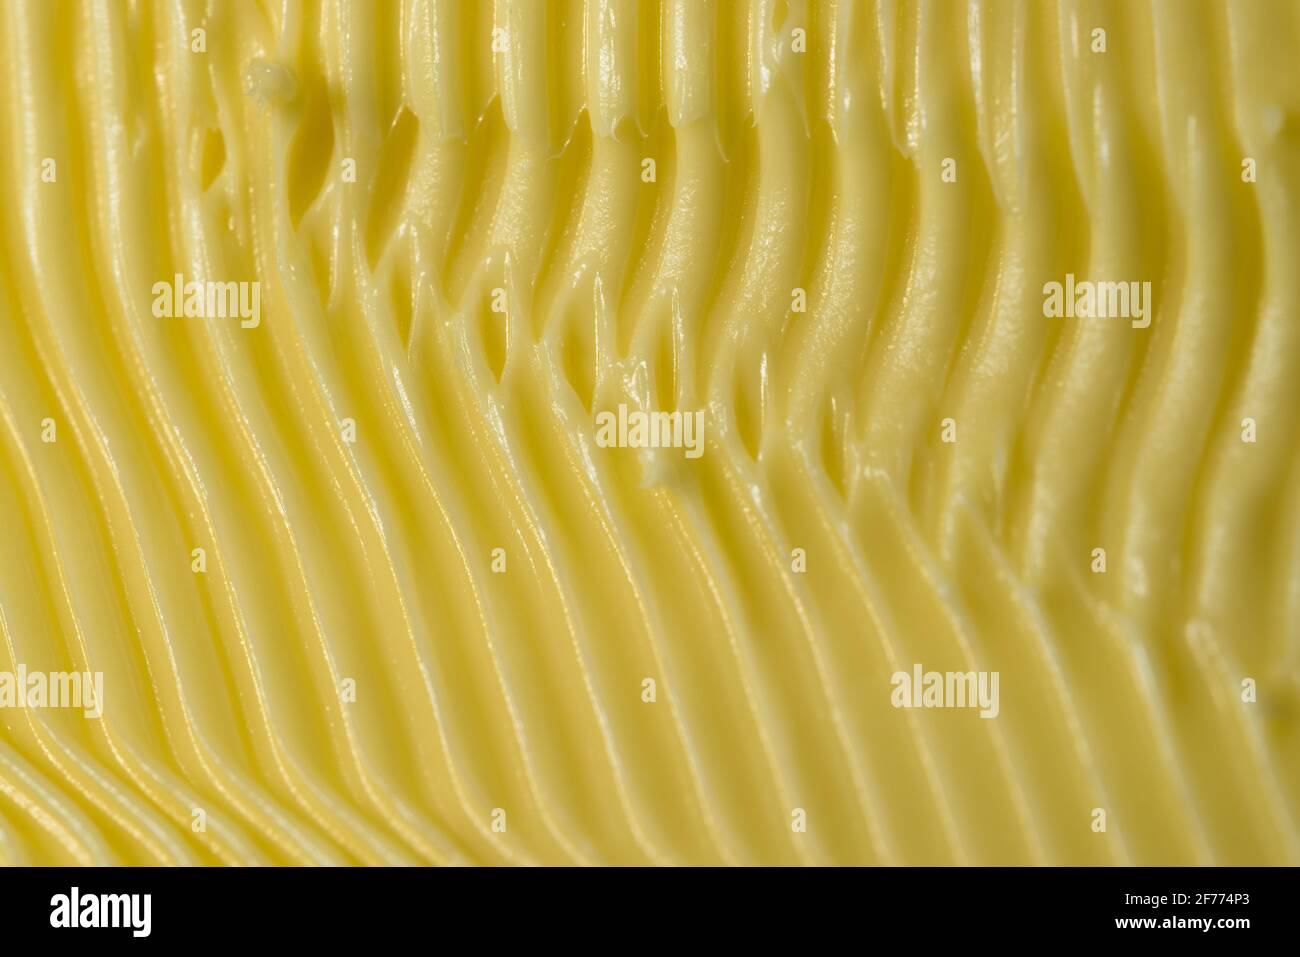 Fond de margarine sur le thème de la nourriture. Façonnés dans des rainures jaunes détaillées par un couteau de cuisine dentelé utilisé pour l'étaler sur le pain. Texture plein format. Banque D'Images